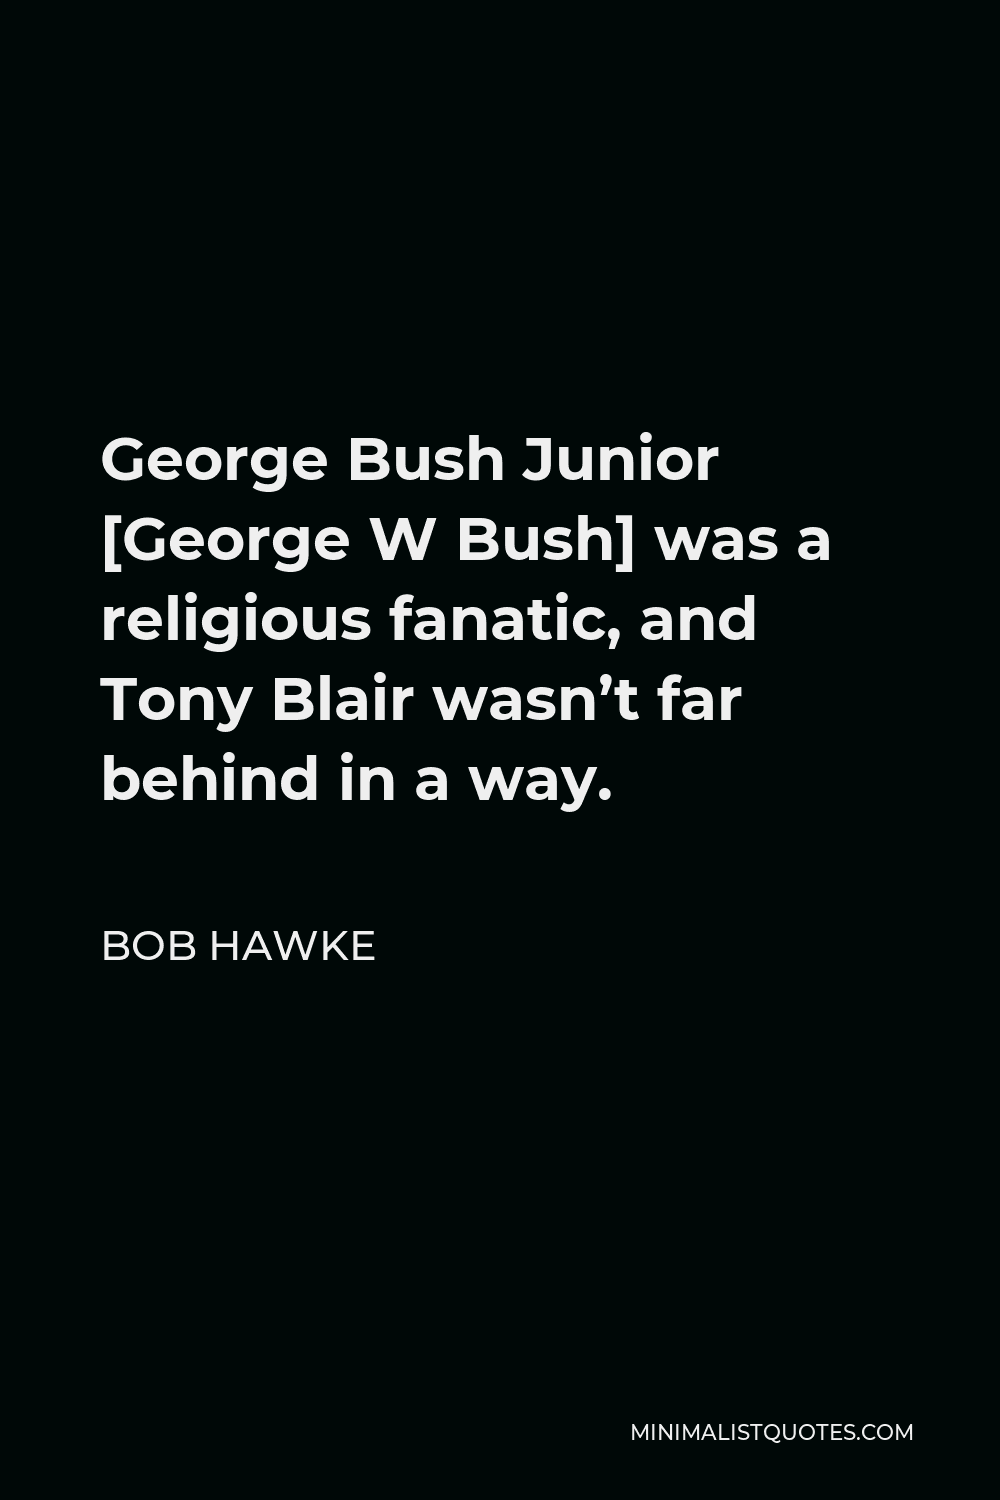 Bob Hawke Quote - George Bush Junior [George W Bush] was a religious fanatic, and Tony Blair wasn’t far behind in a way.